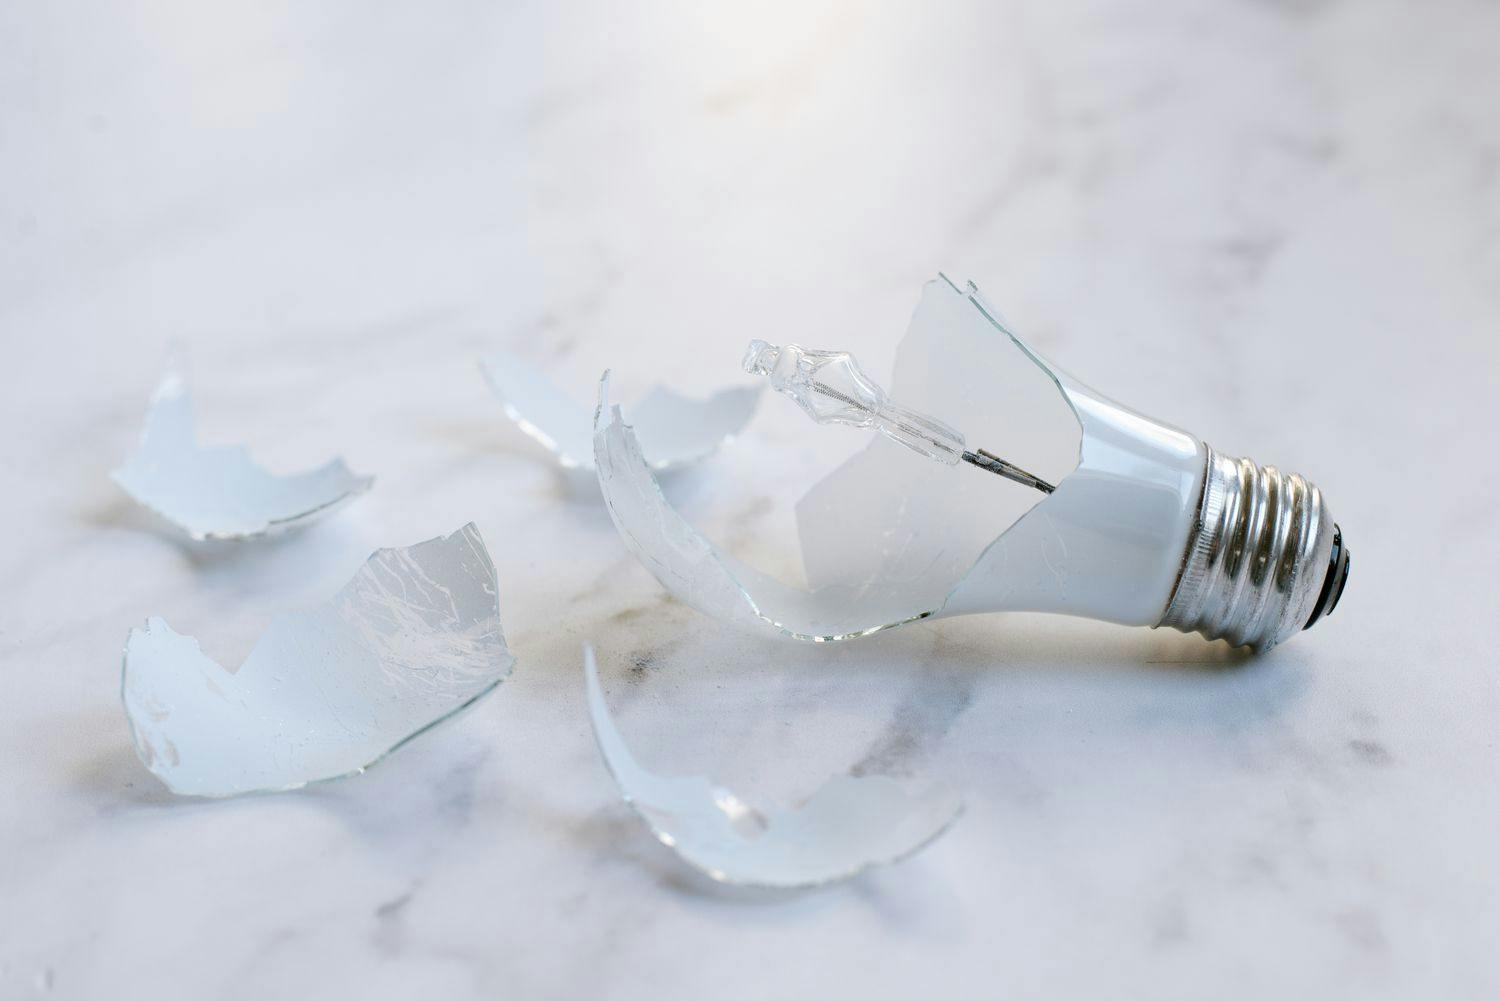 Comment retirer une ampoule cassée : 5 méthodes